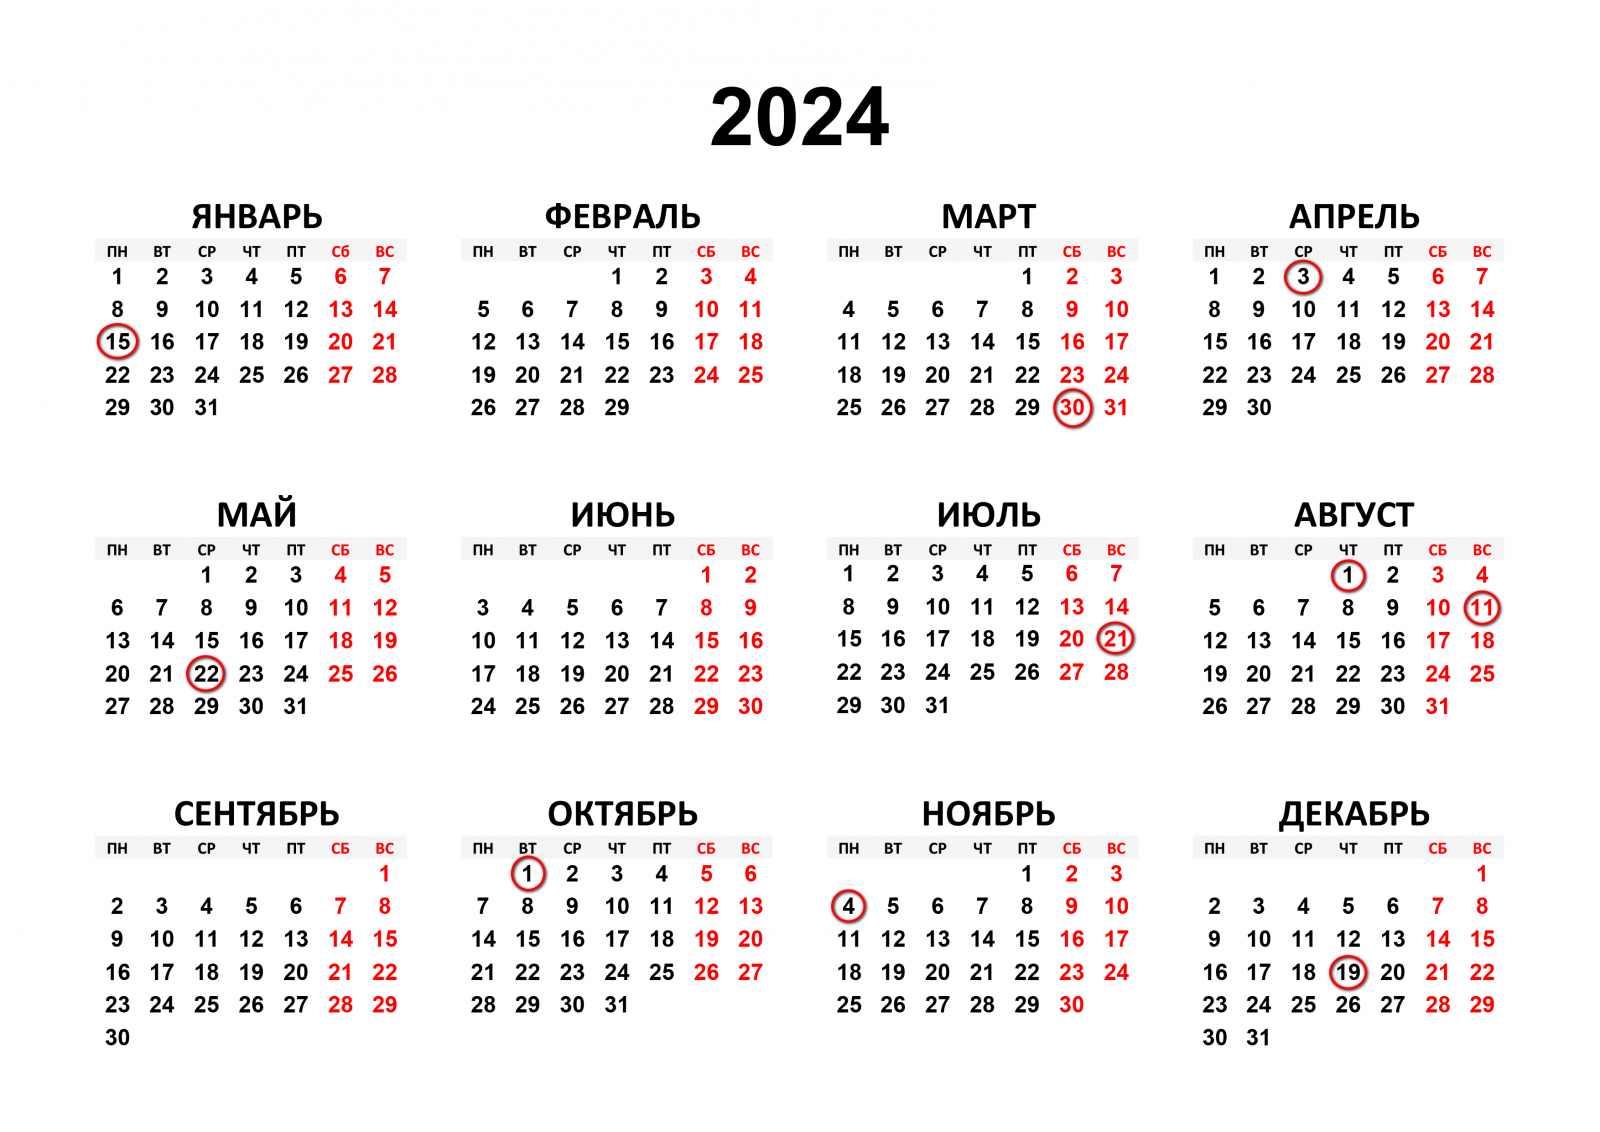 Престольные праздники в 2024 году